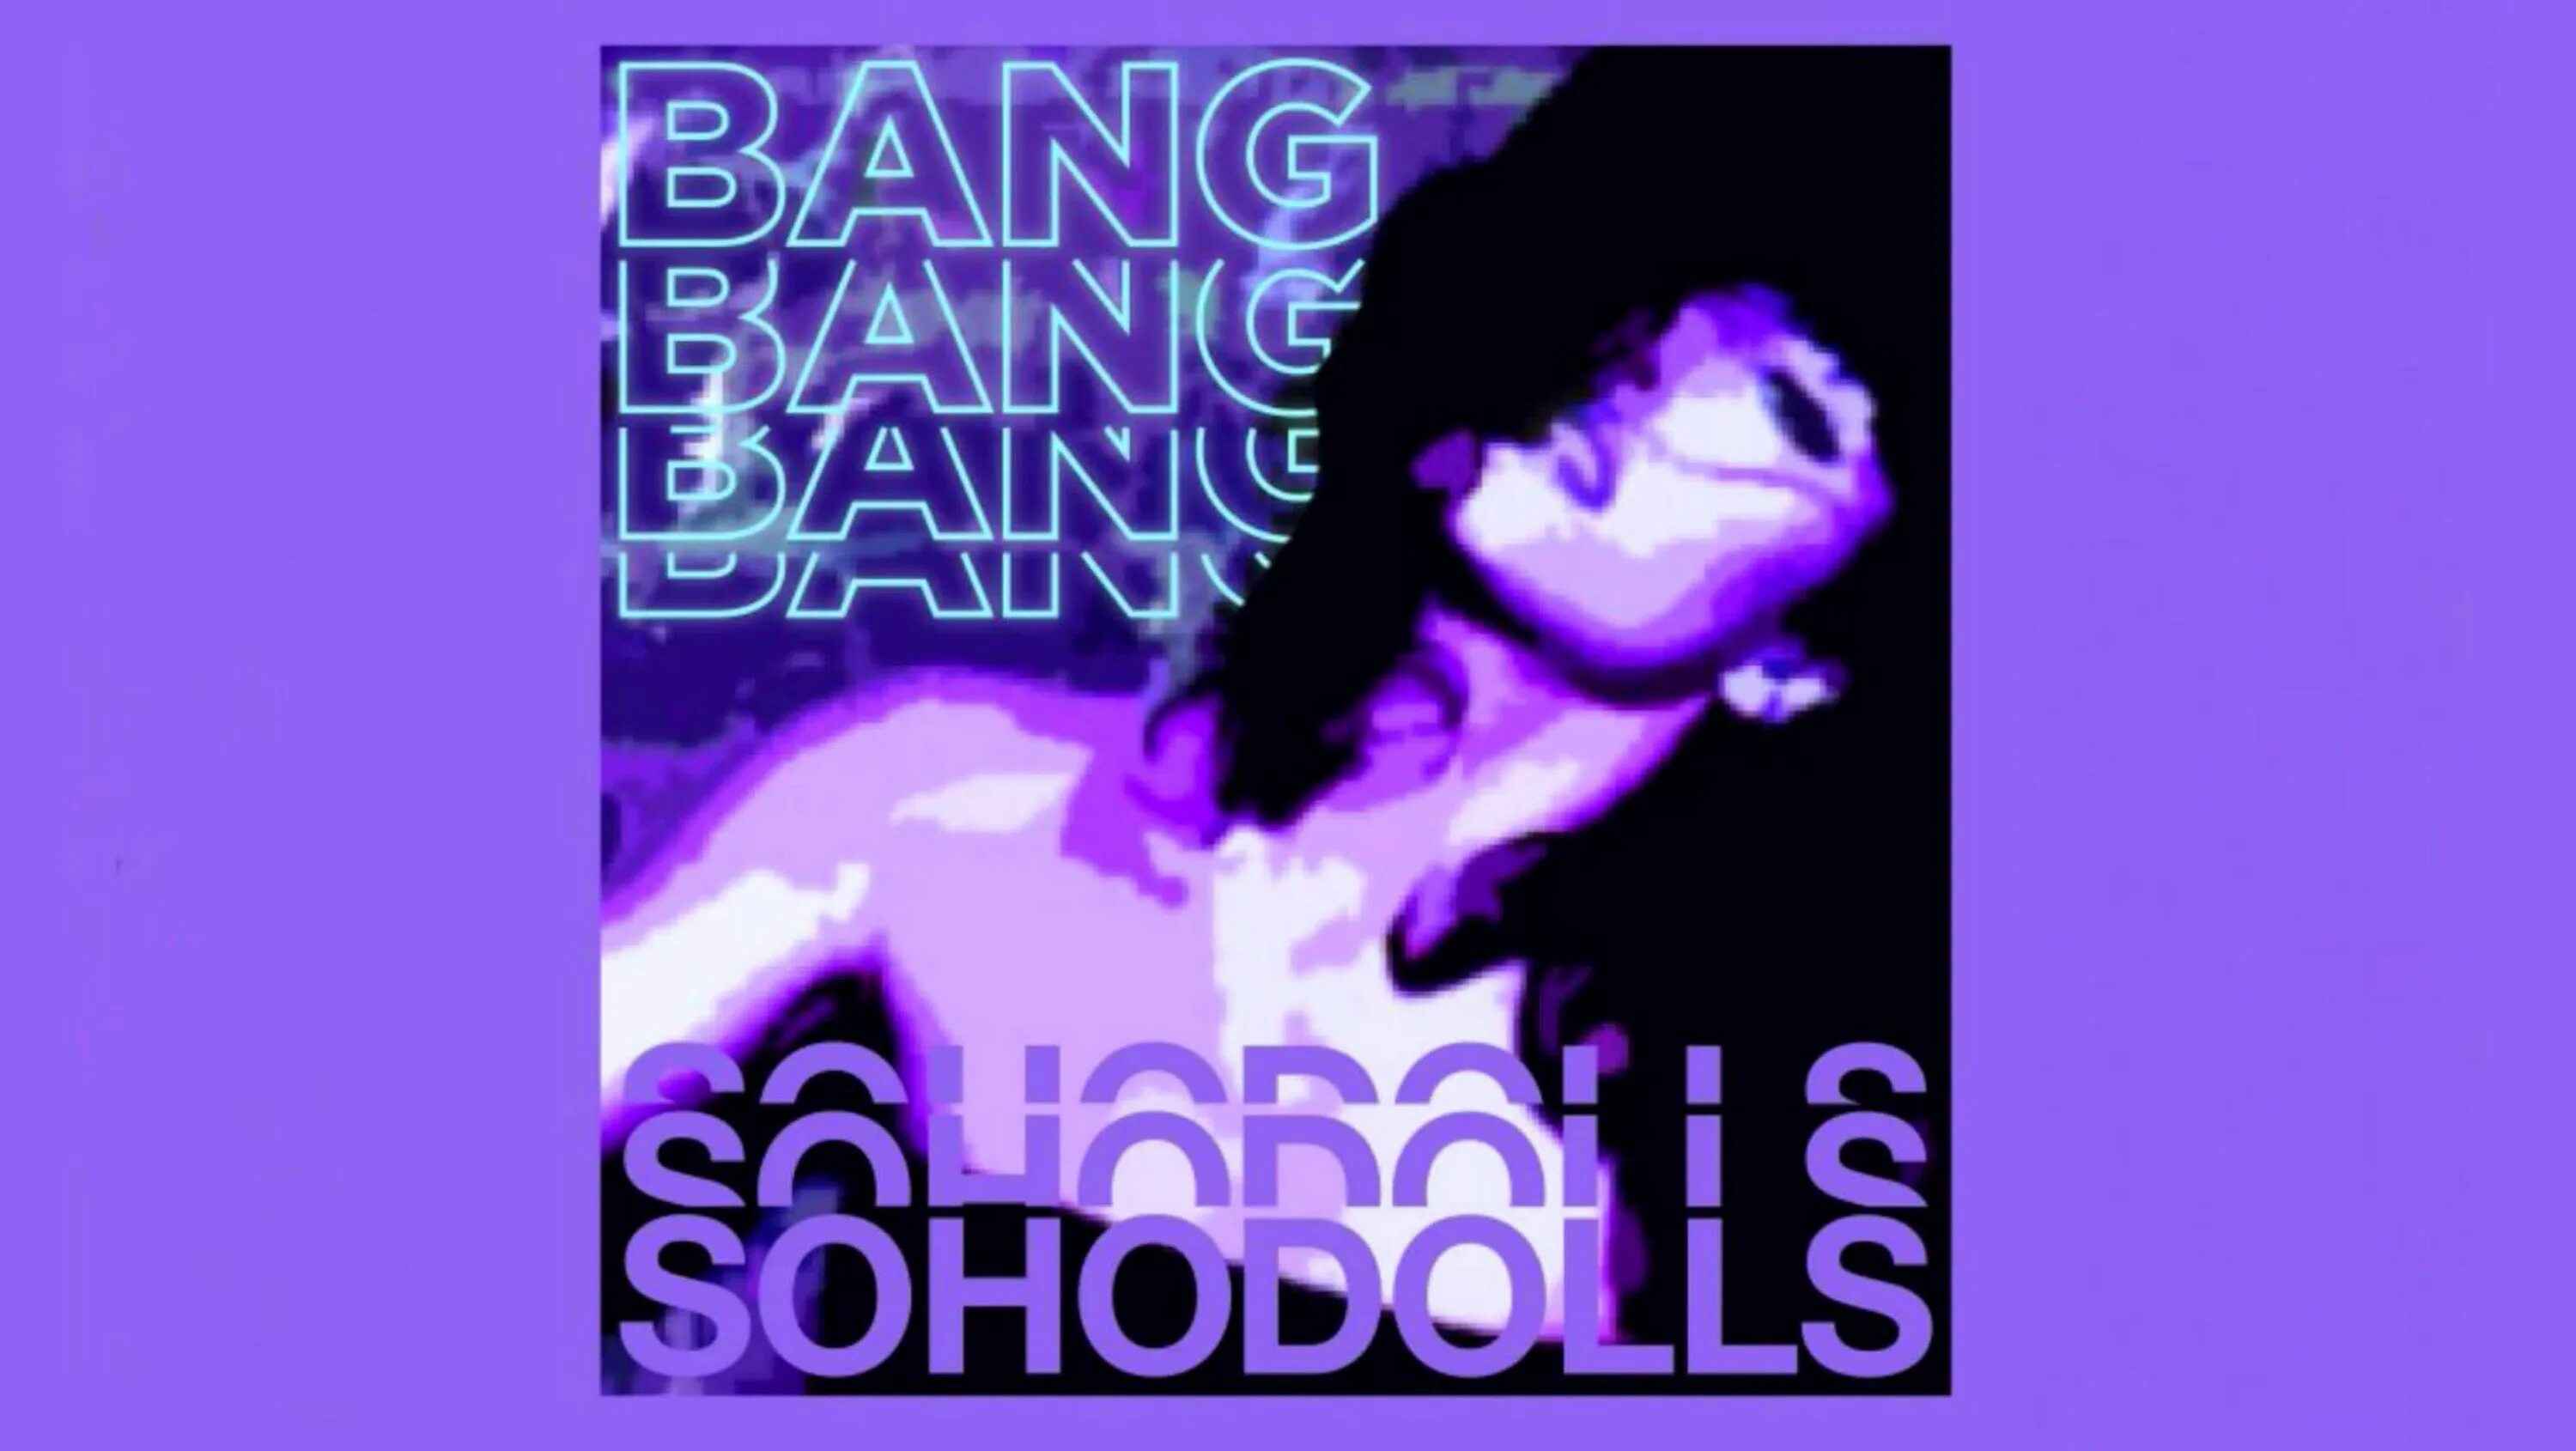 Bang bang studio. Bang Bang Bang Sohodolls обложка. Песня Bang Bang Bang. Bang Bang Bang Bang Sohodolls песни. Песня Bang Bang Speed up.